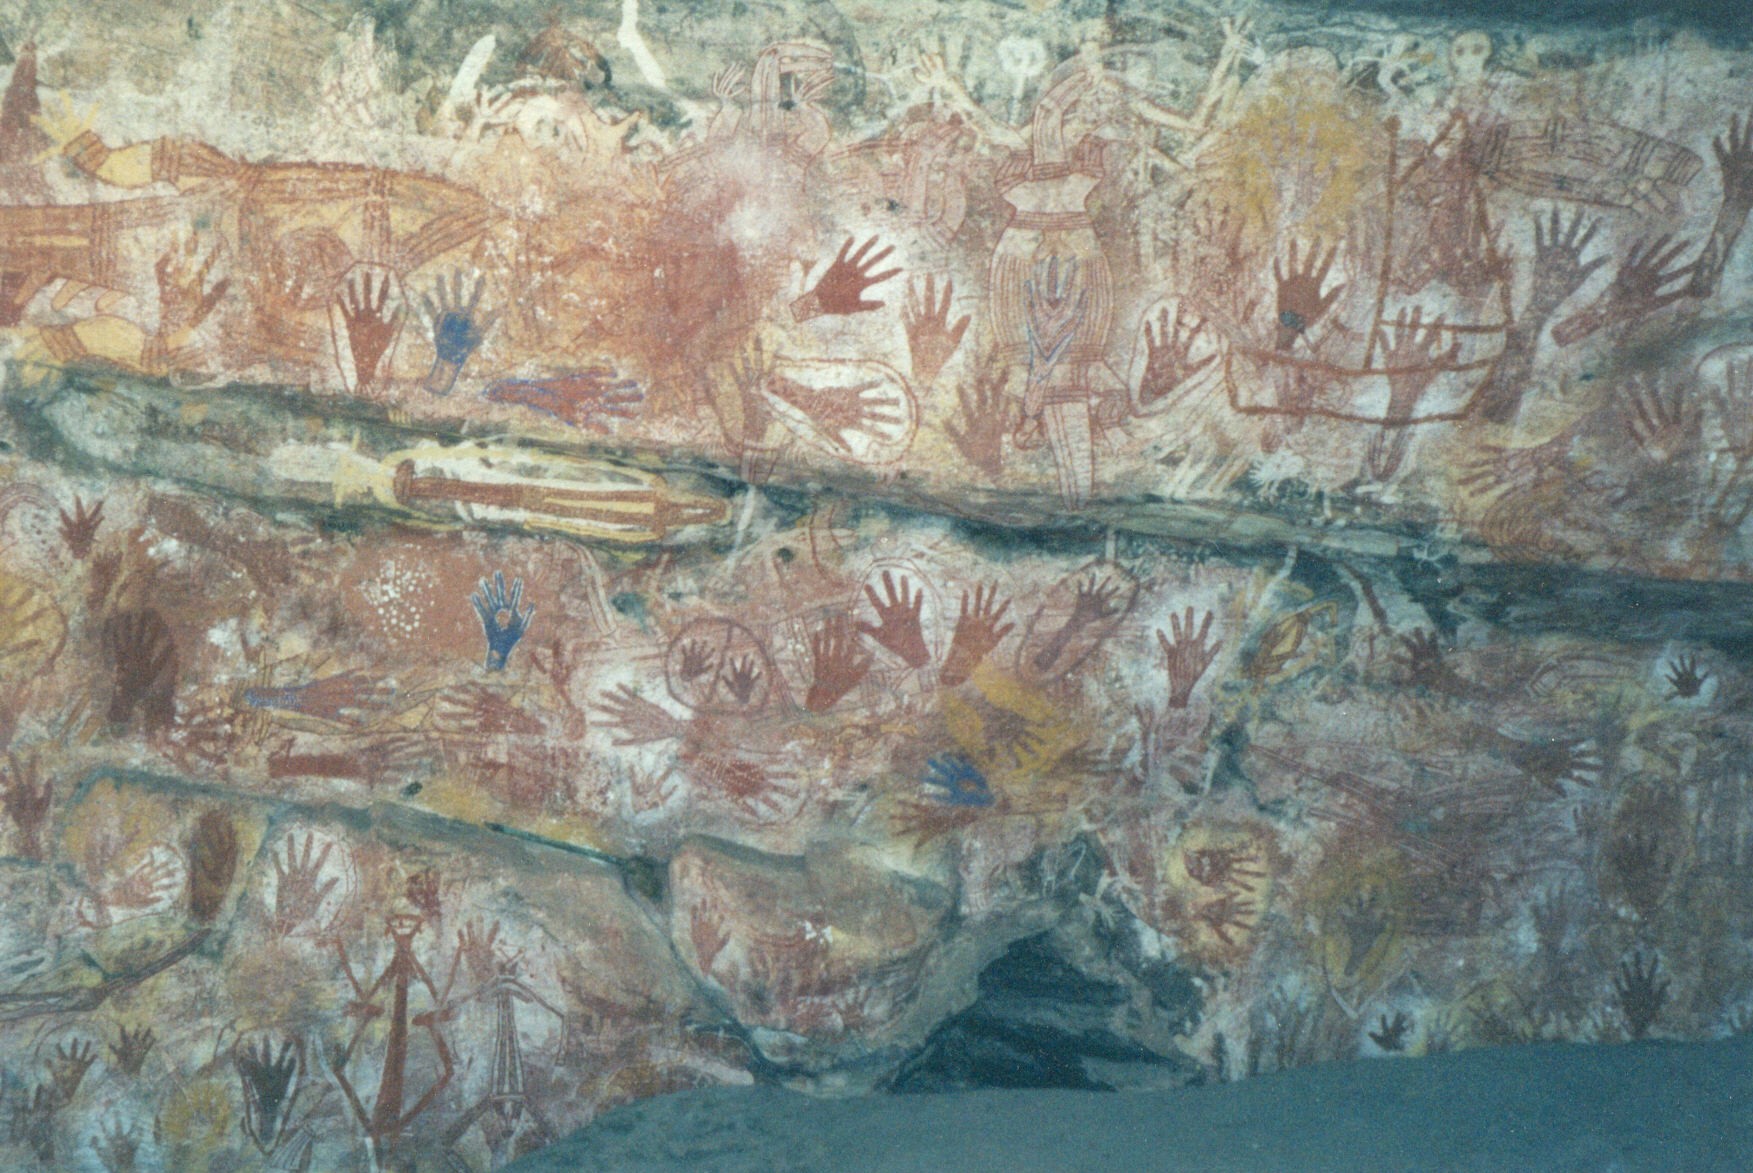 photograph of Australian rock art